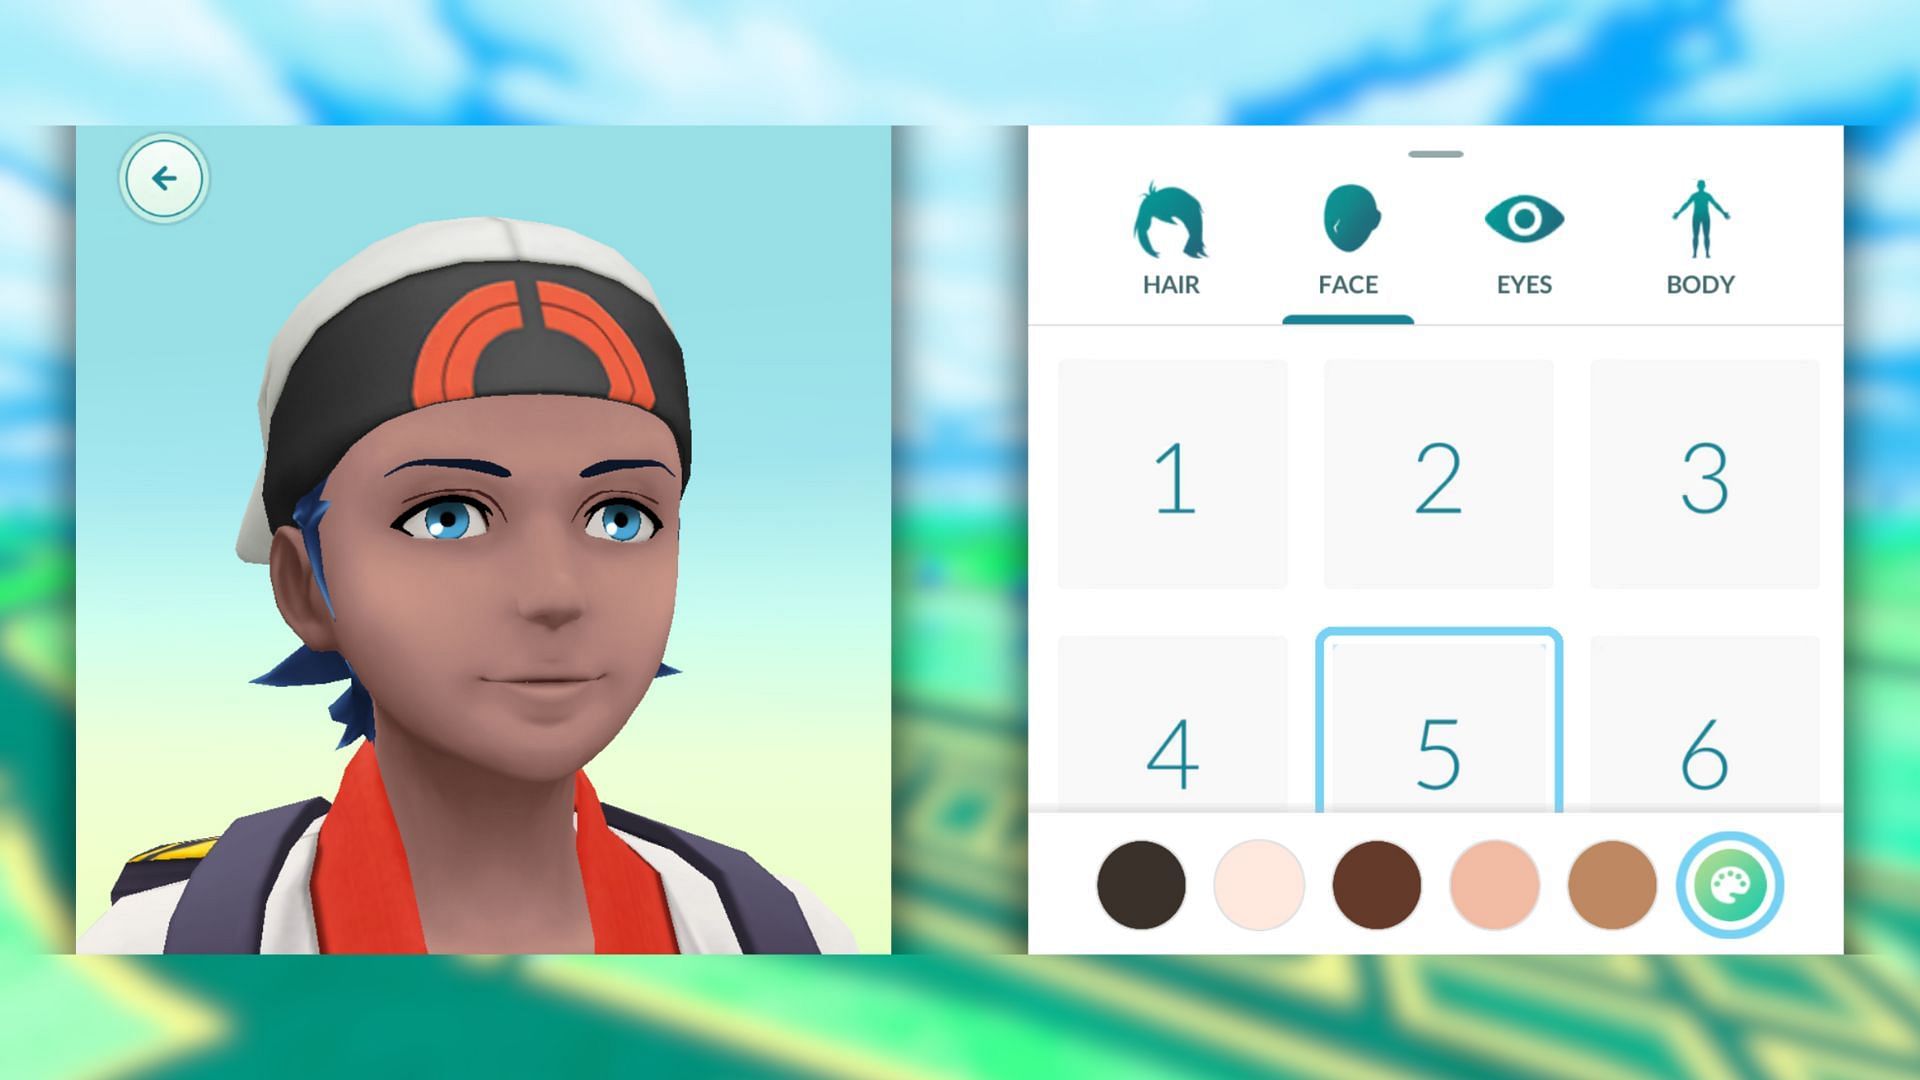 Preimpostazioni del volto disponibili nel gioco (immagine tramite The Pokemon Company)